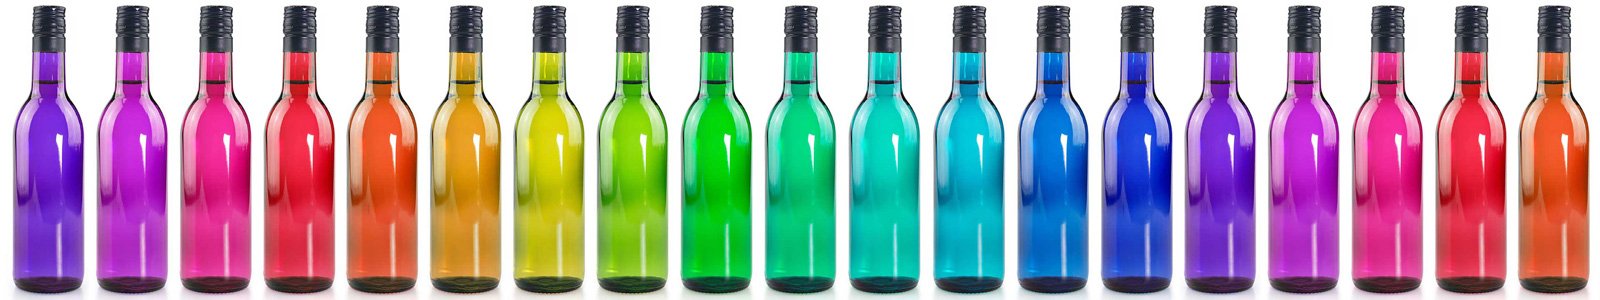 №6735 - Разноцветные бутылочки на белом фоне